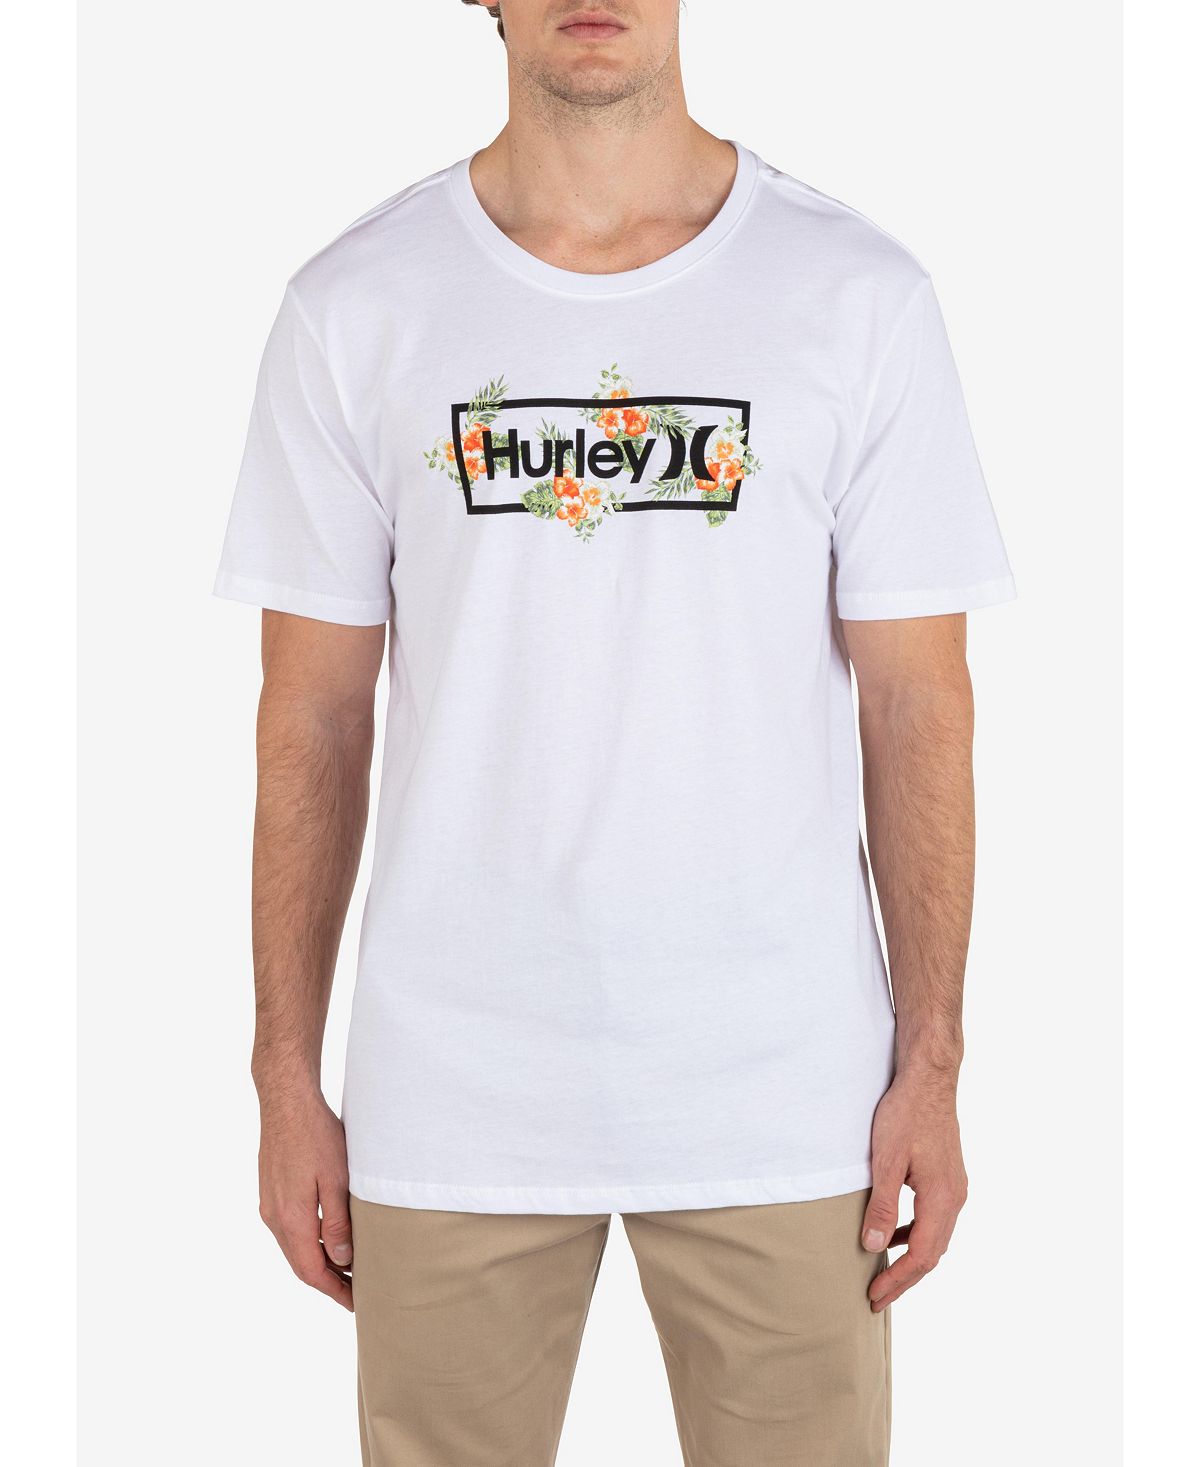 Мужская повседневная футболка с коротким рукавом Congo Outline Hurley мужская повседневная футболка с коротким рукавом для укулеле hurley тан бежевый